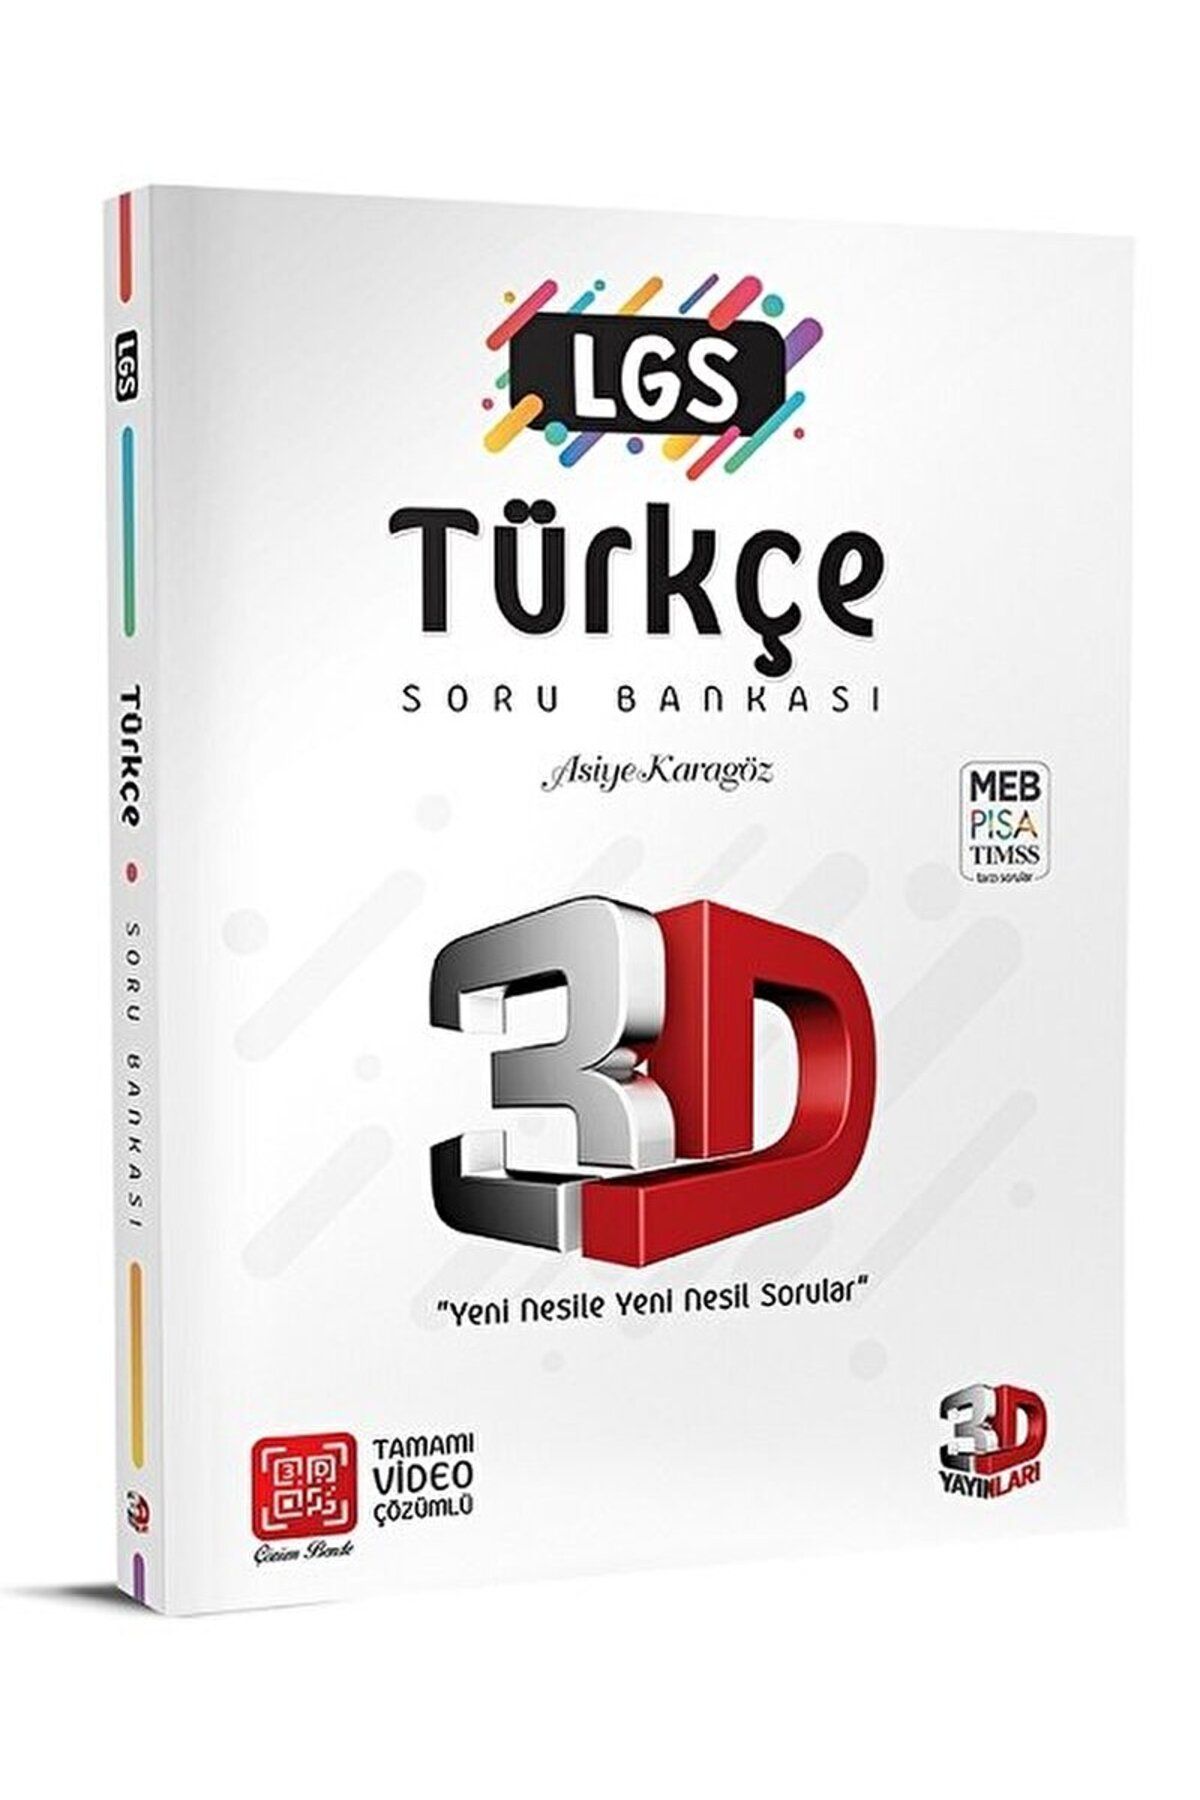 3D Yayınları LGS 3D Türkçe Soru Bankası Tamamı Video Çözümlü / Asiye Karagöz / 3D Yayınları / 9786057590992